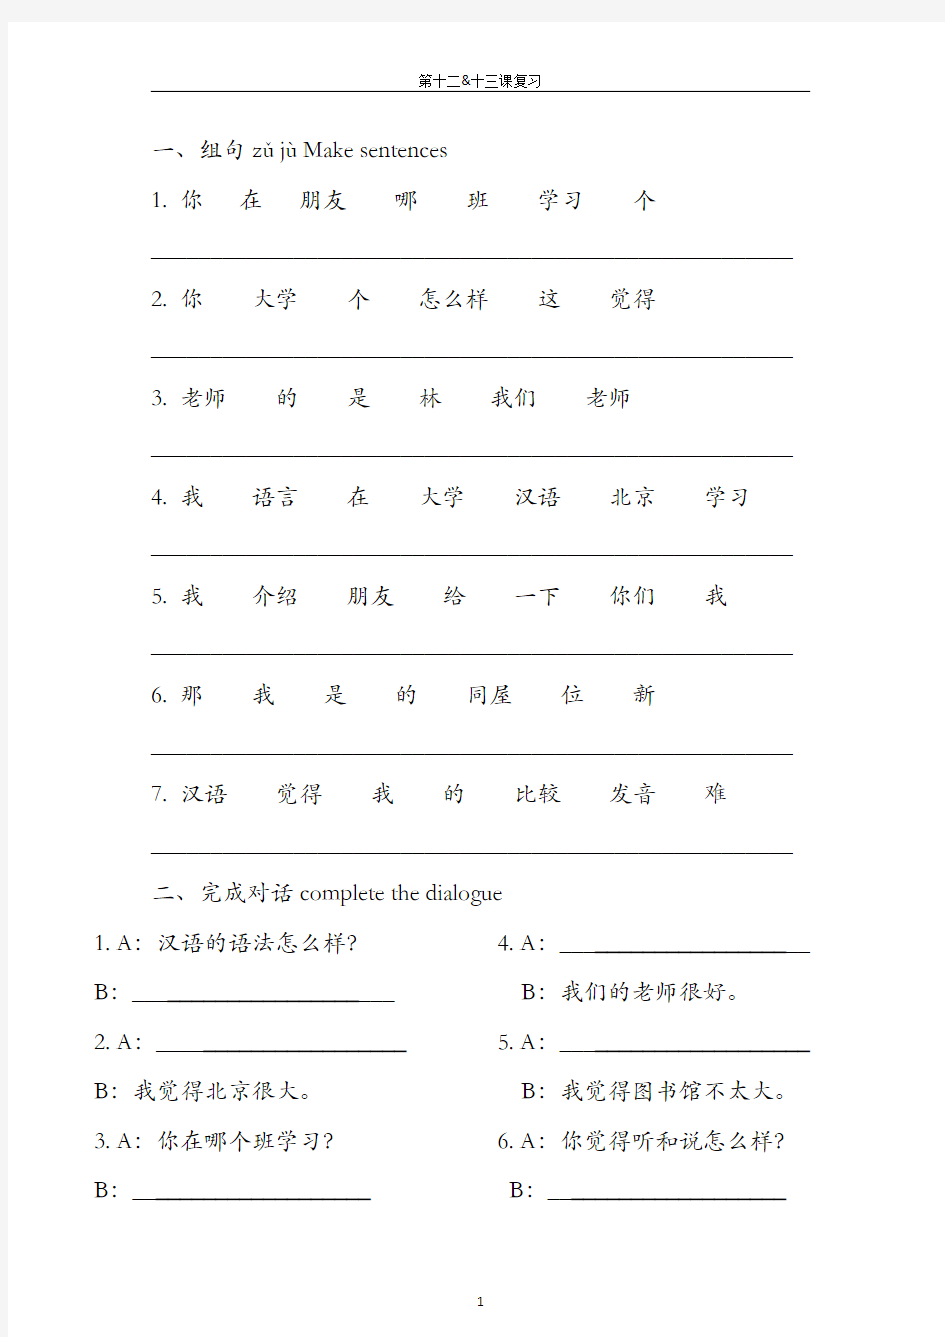 《汉语教程》第一册第12-13练习(连词成句、完成对话)